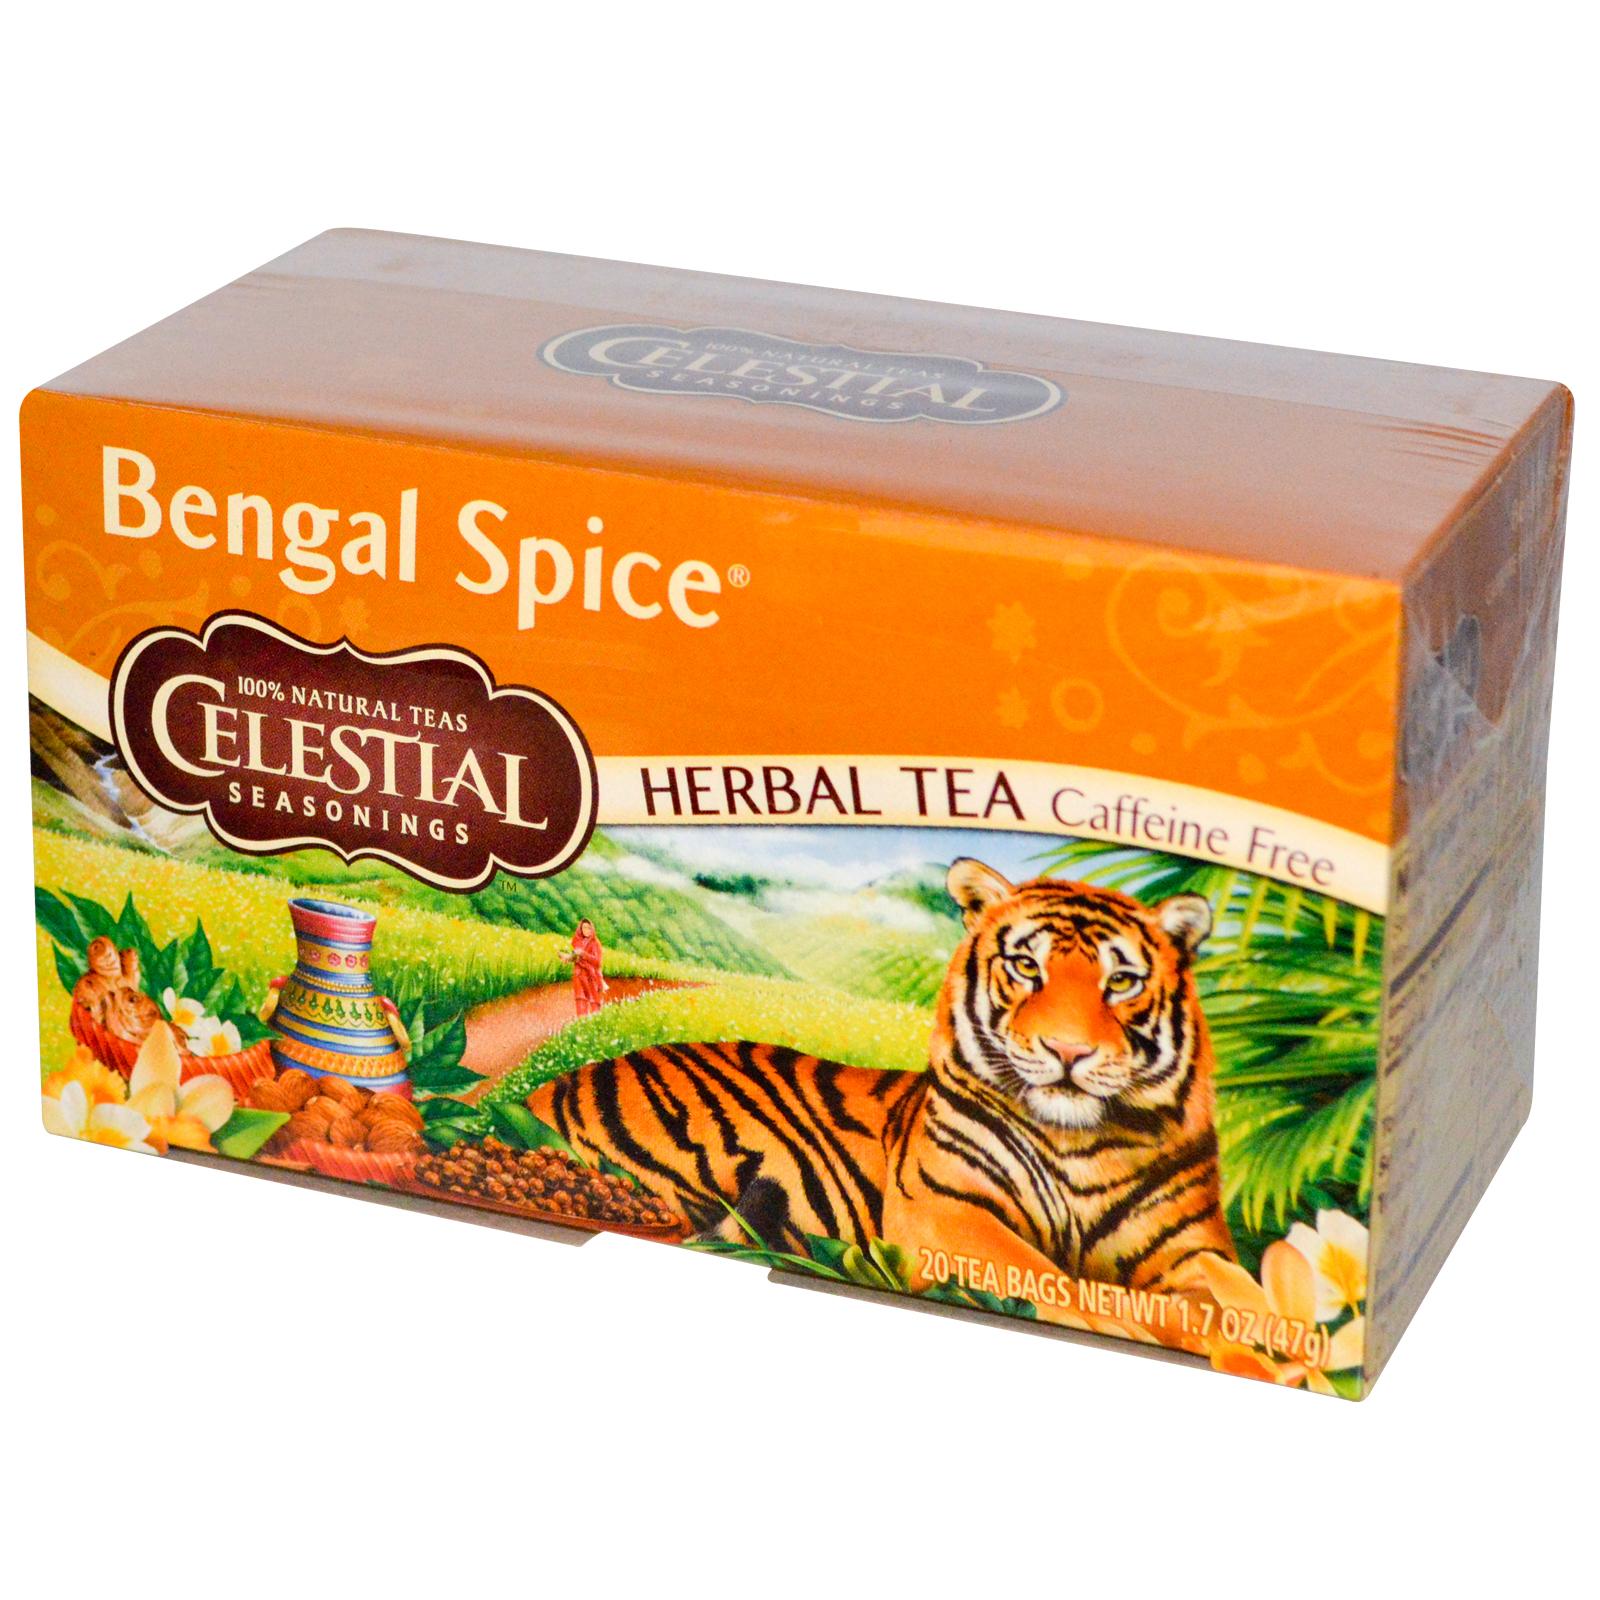 Celestial Seasonings Herbal Tea Bengal Spice Caffeine Free